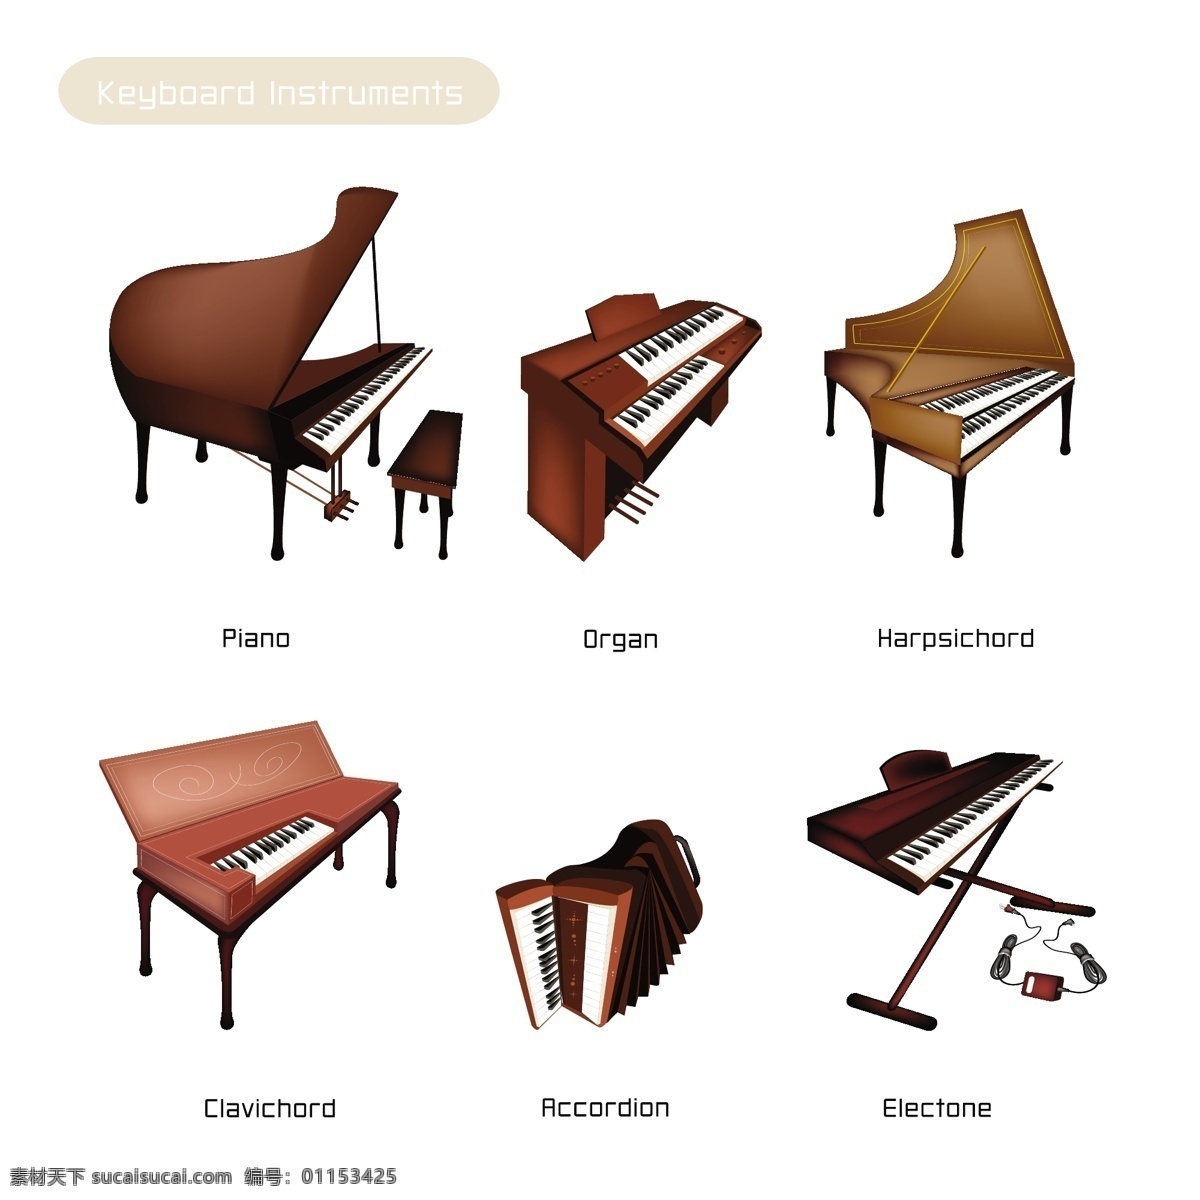 各种 钢琴 乐器 矢量 模板下载 大琴 手风琴 音乐乐器 古典音乐 各种乐器 影音娱乐 生活百科 矢量素材 白色